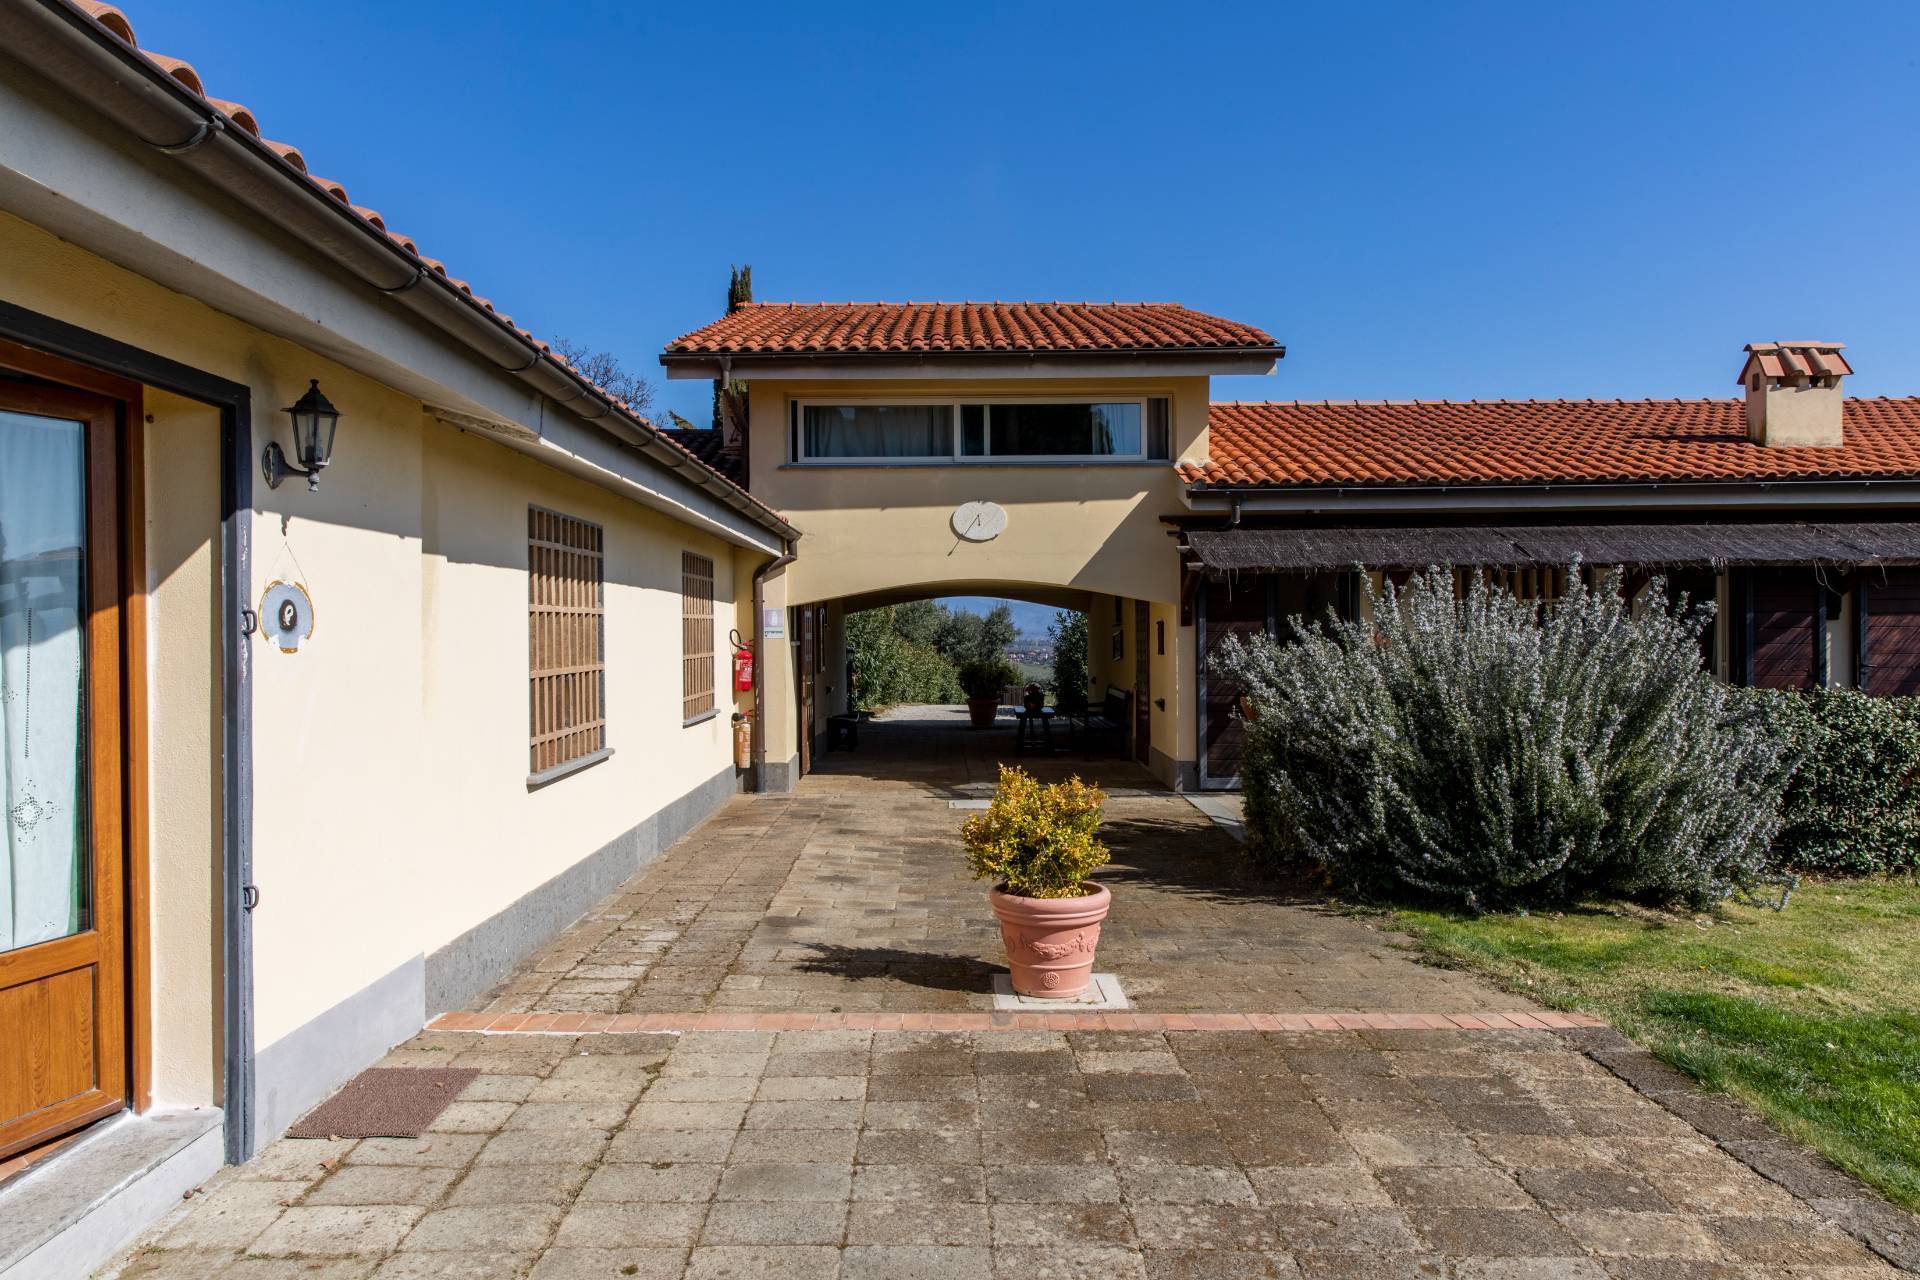 Villa in Vendita a Castelnuovo Di Porto: 5 locali, 1100 mq - Foto 28